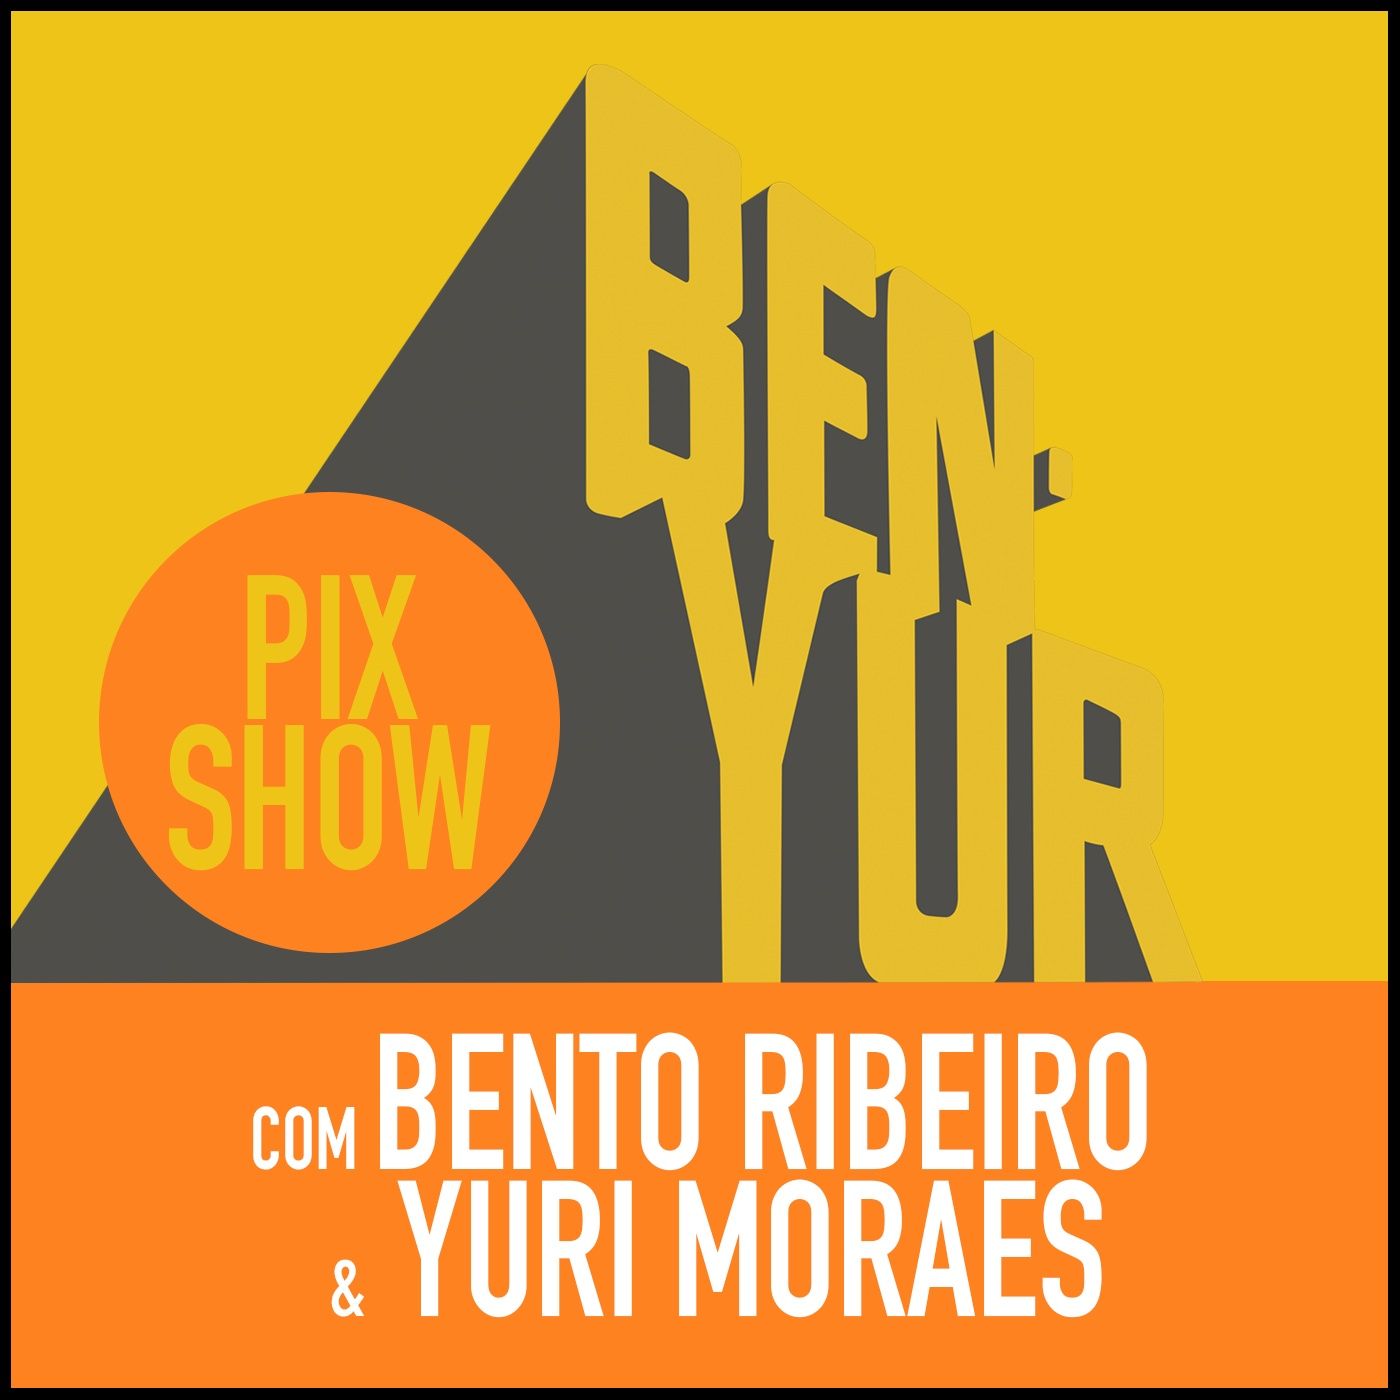 BEN-YUR PIXSHOW#094 com Bento Ribeiro & Yuri Moraes